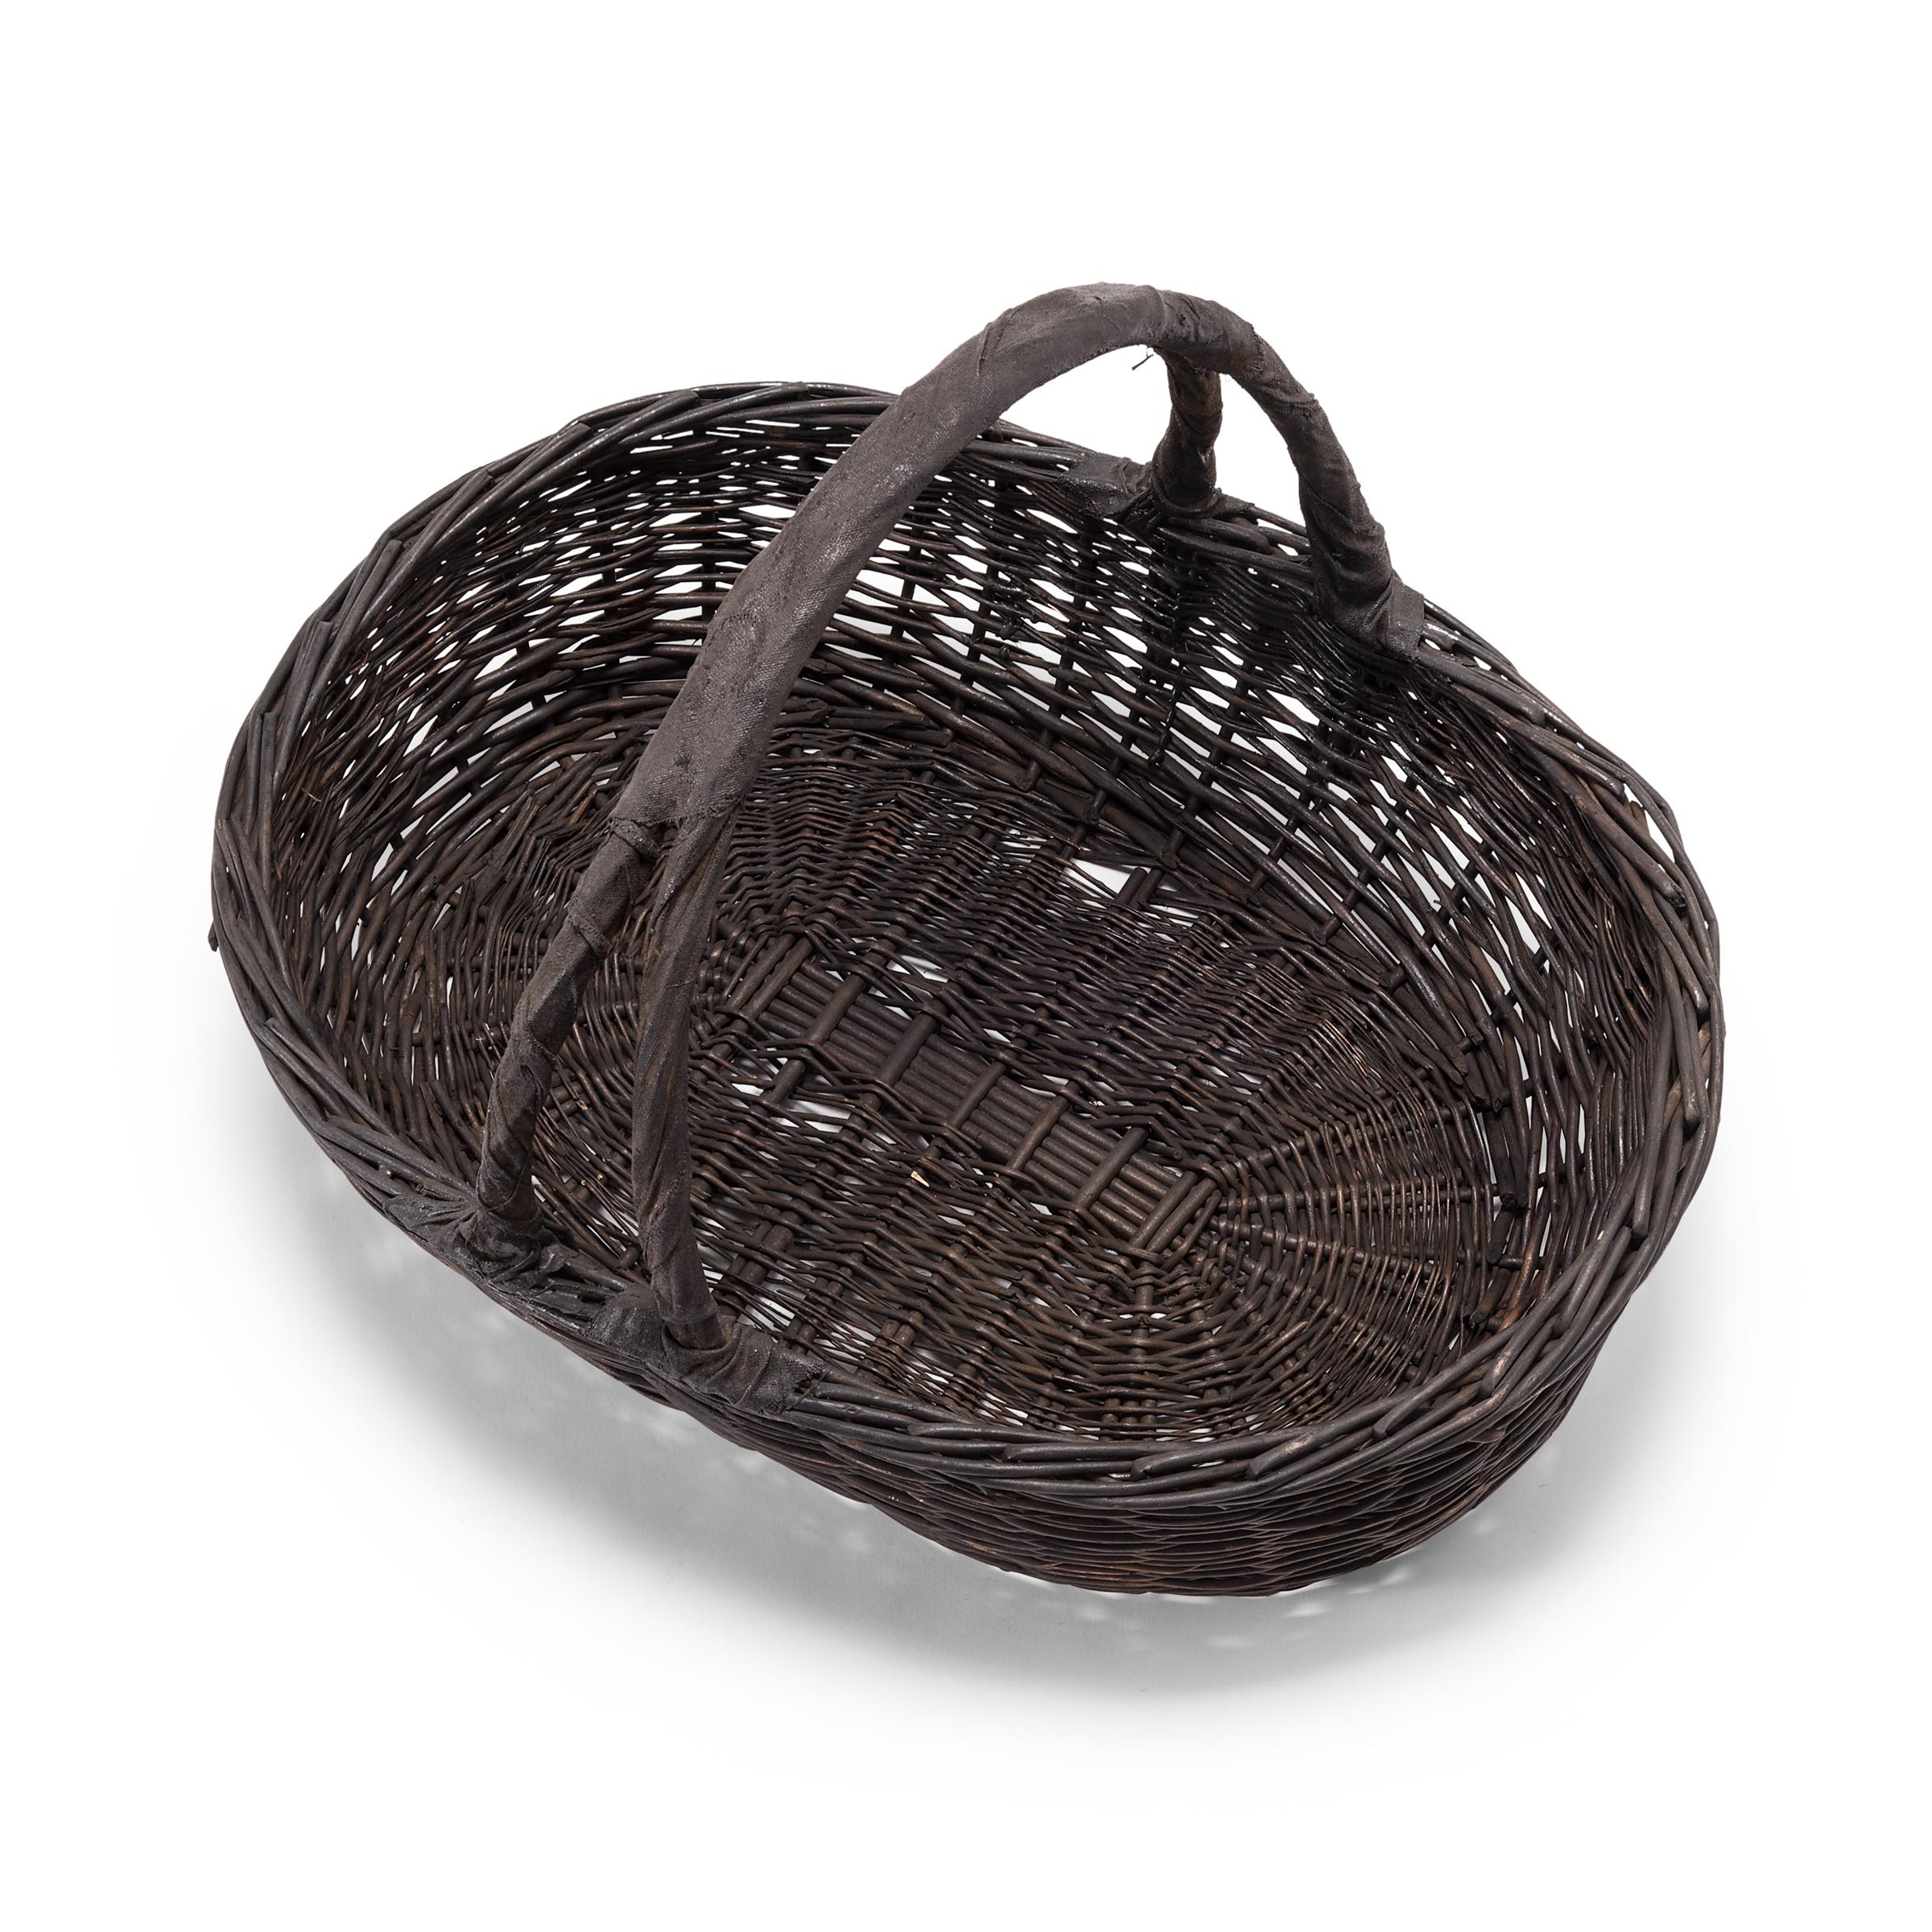 vintage vegetable basket